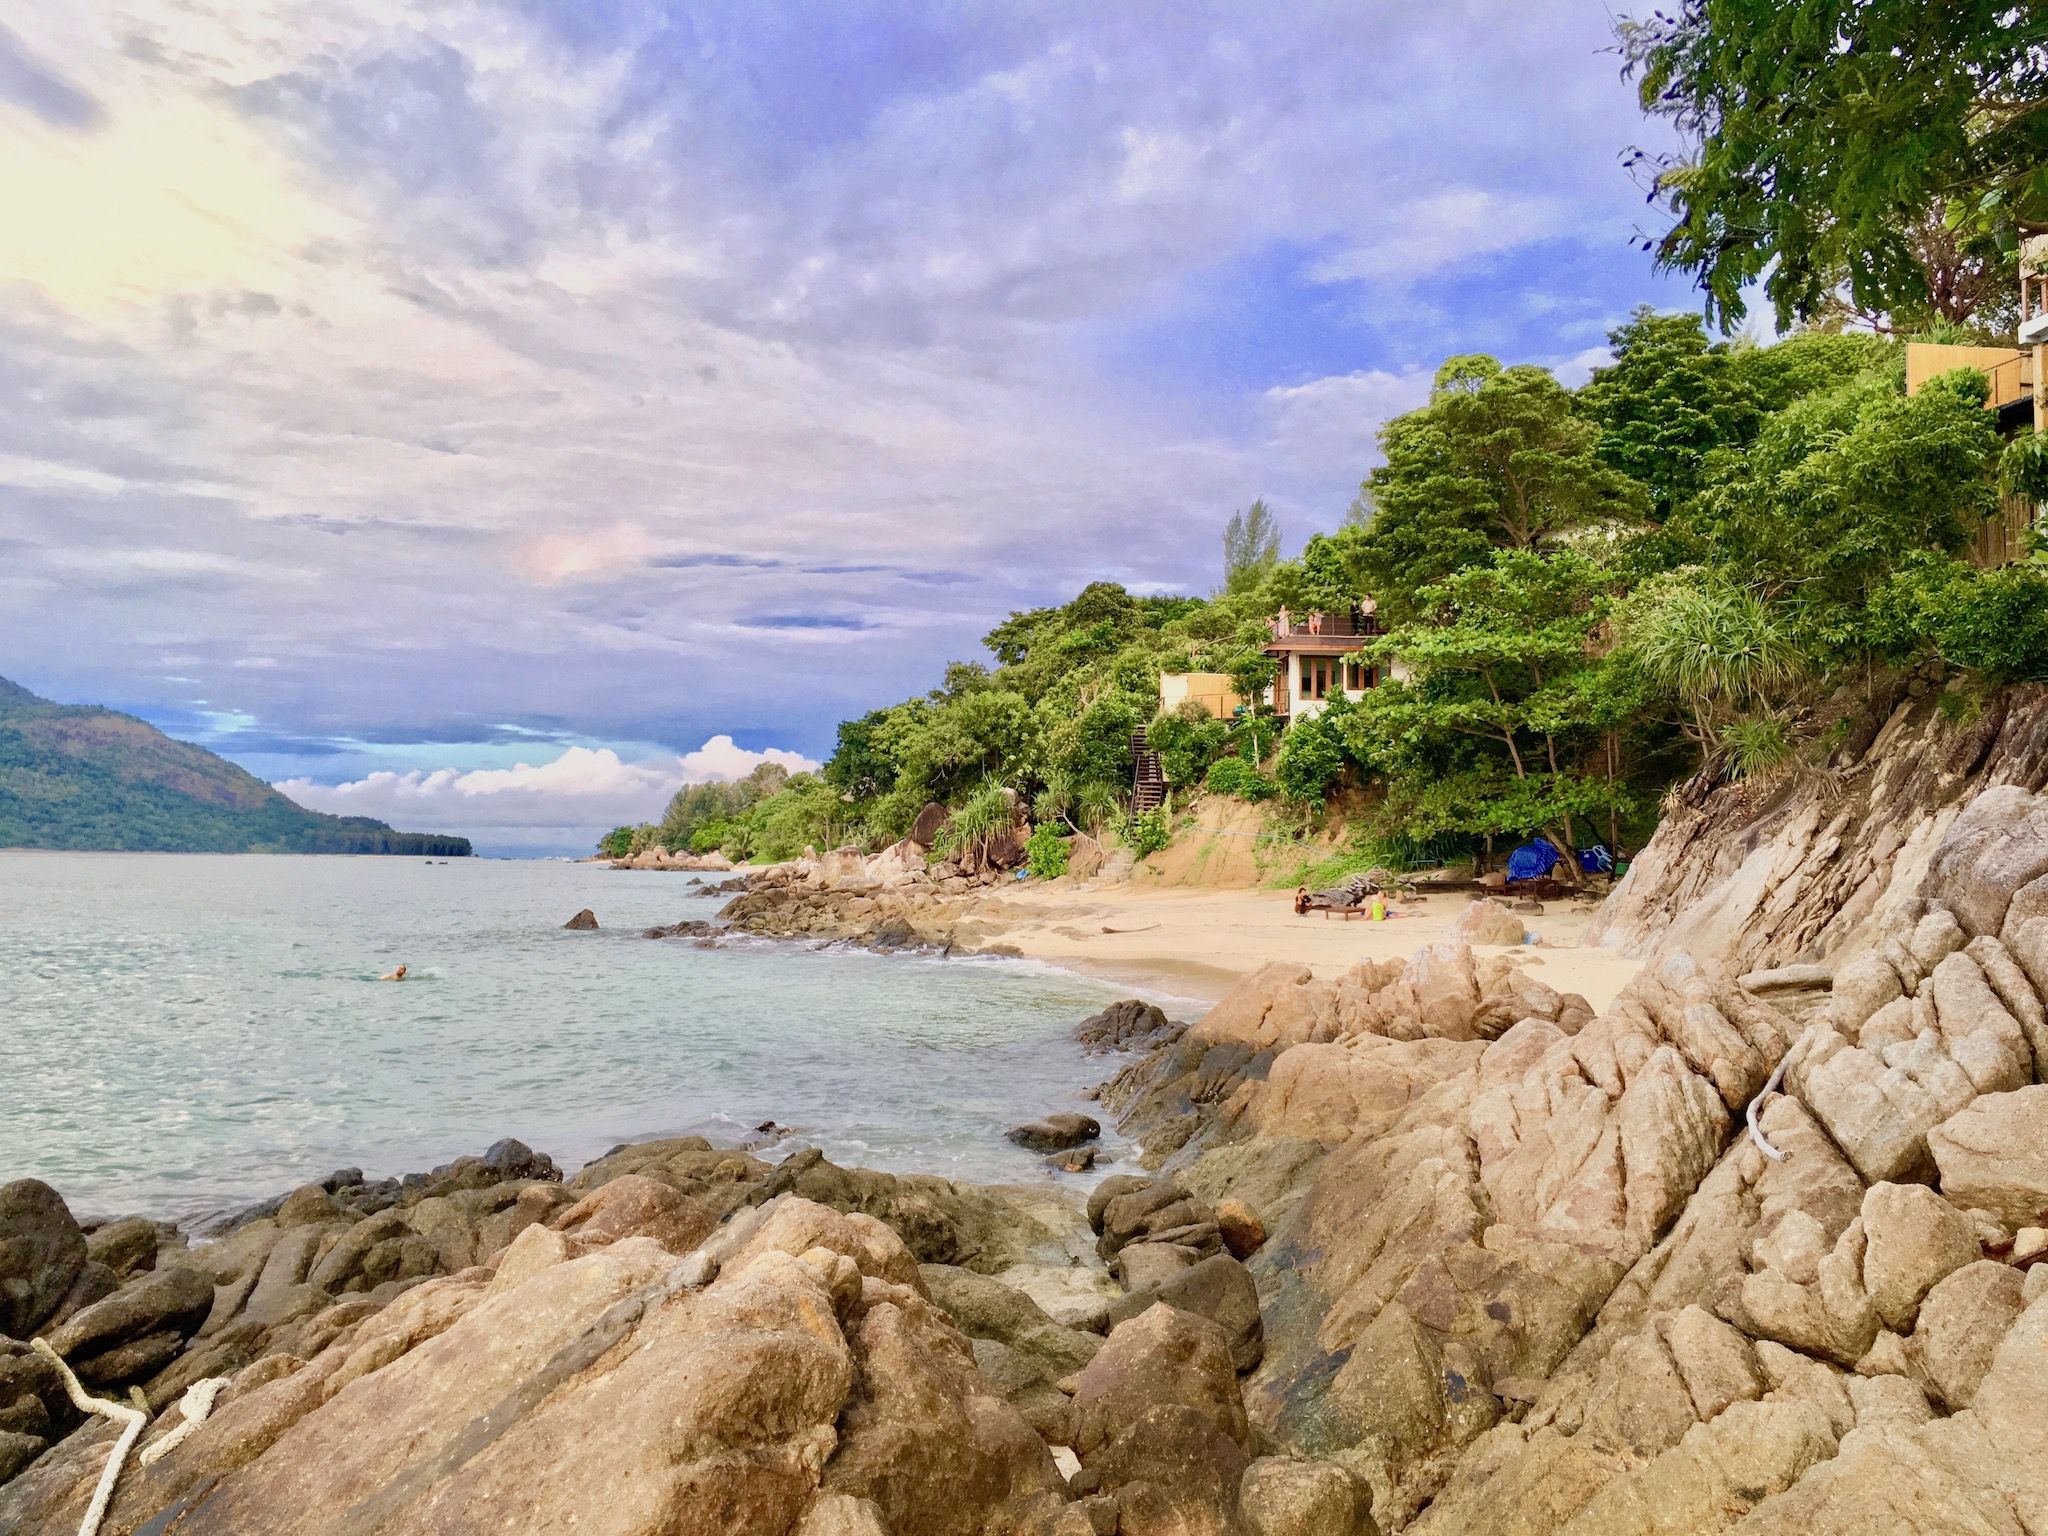 Muchos resorts en Koh Lipe tienen su propia playa pequeña, ¡pero como forastero puedes ir allí! Foto: Sascha Tegtmeyer